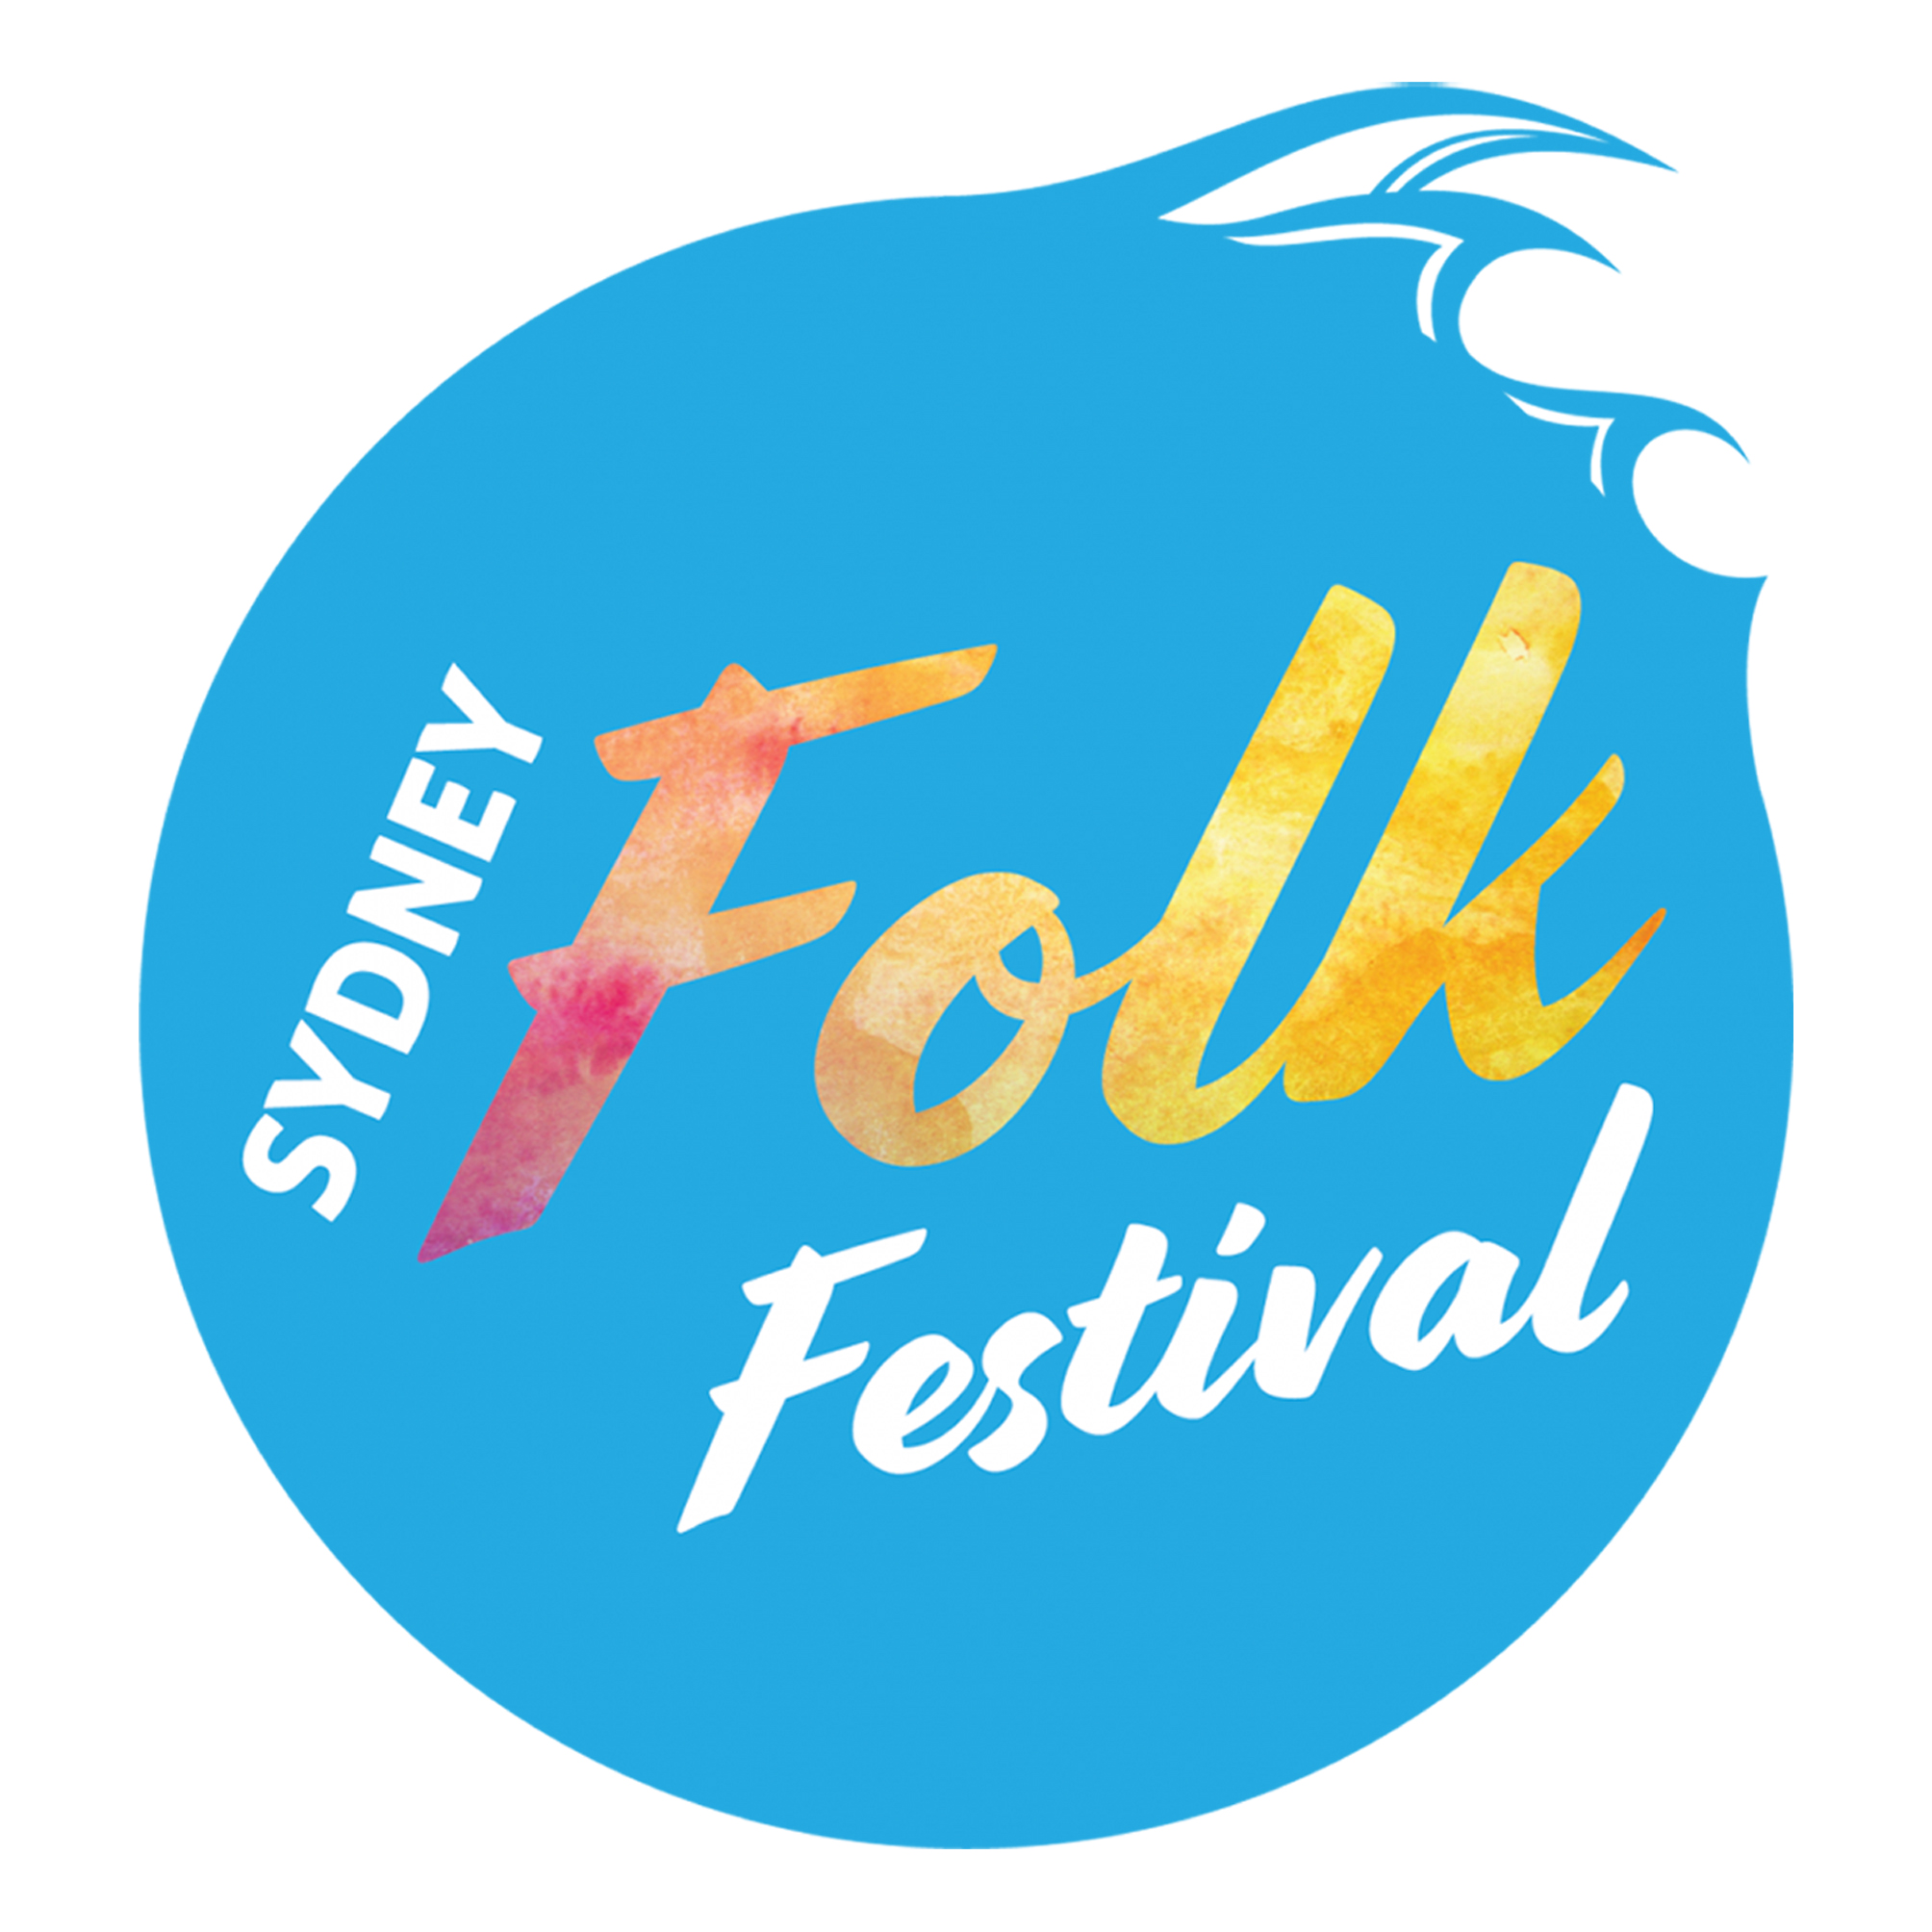 Sydney Folk Festival The Folk Federation of NSW